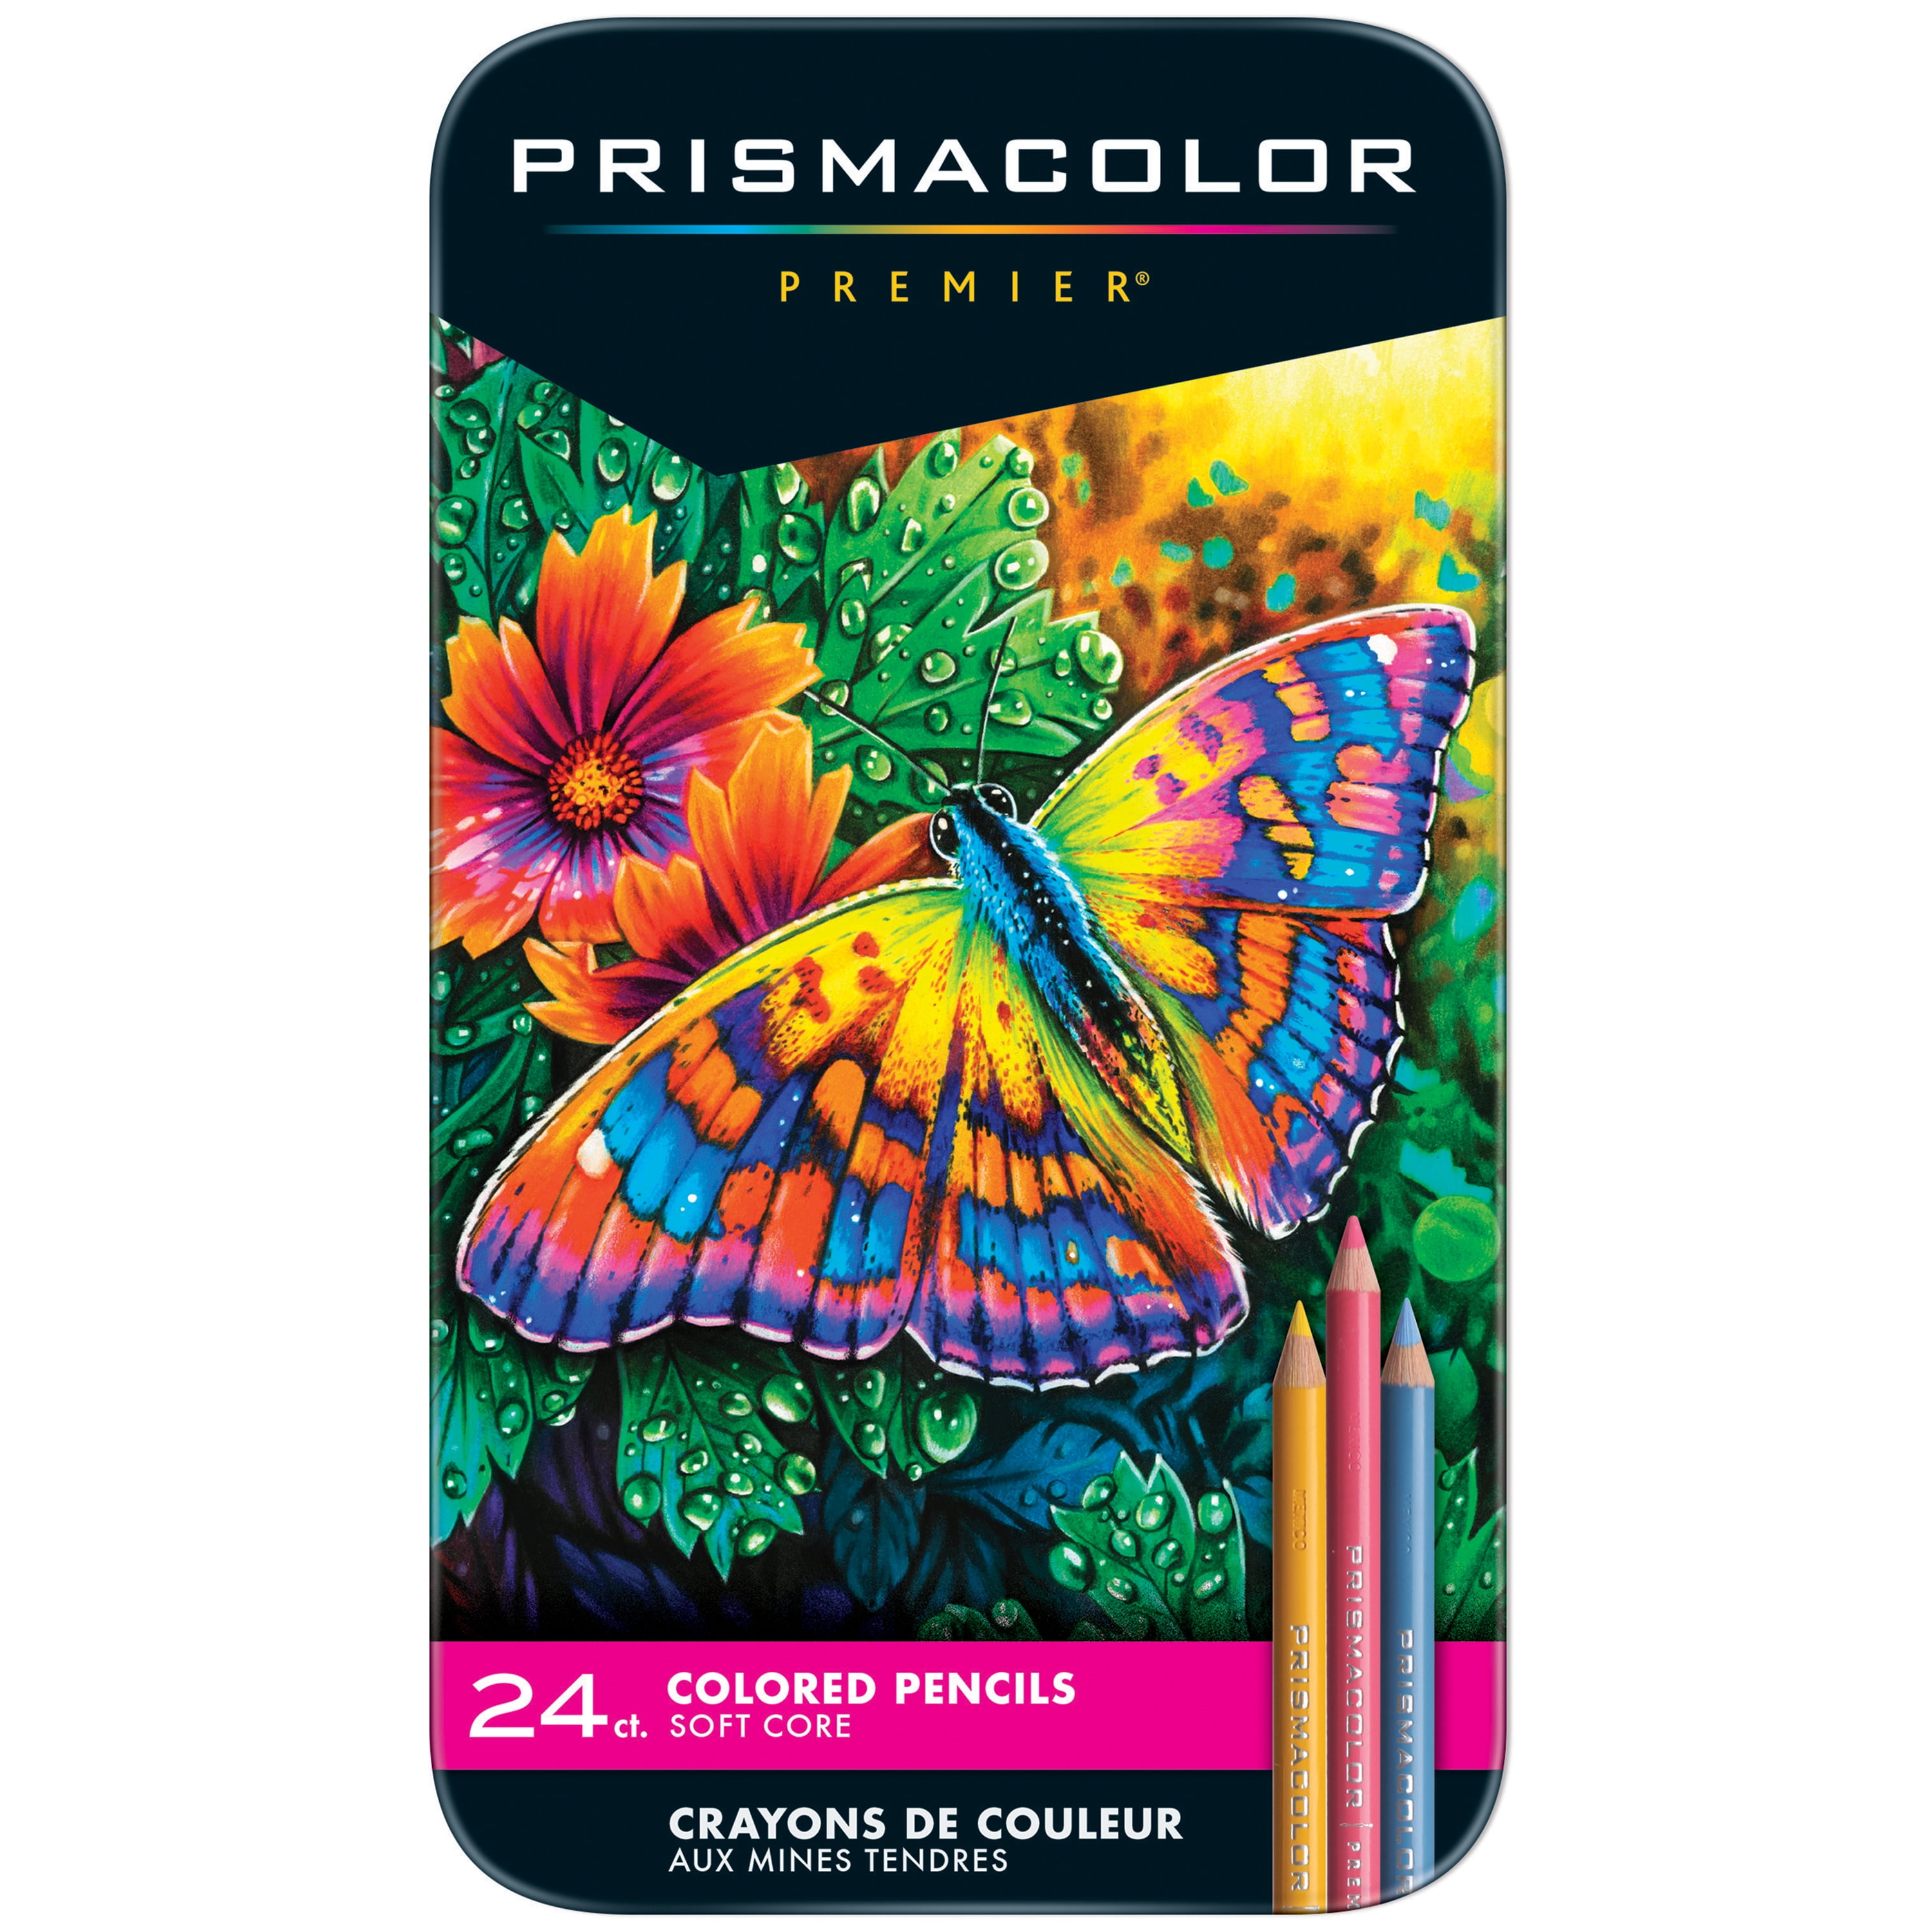 Prismacolor Premier Colored Pencil 24 Set